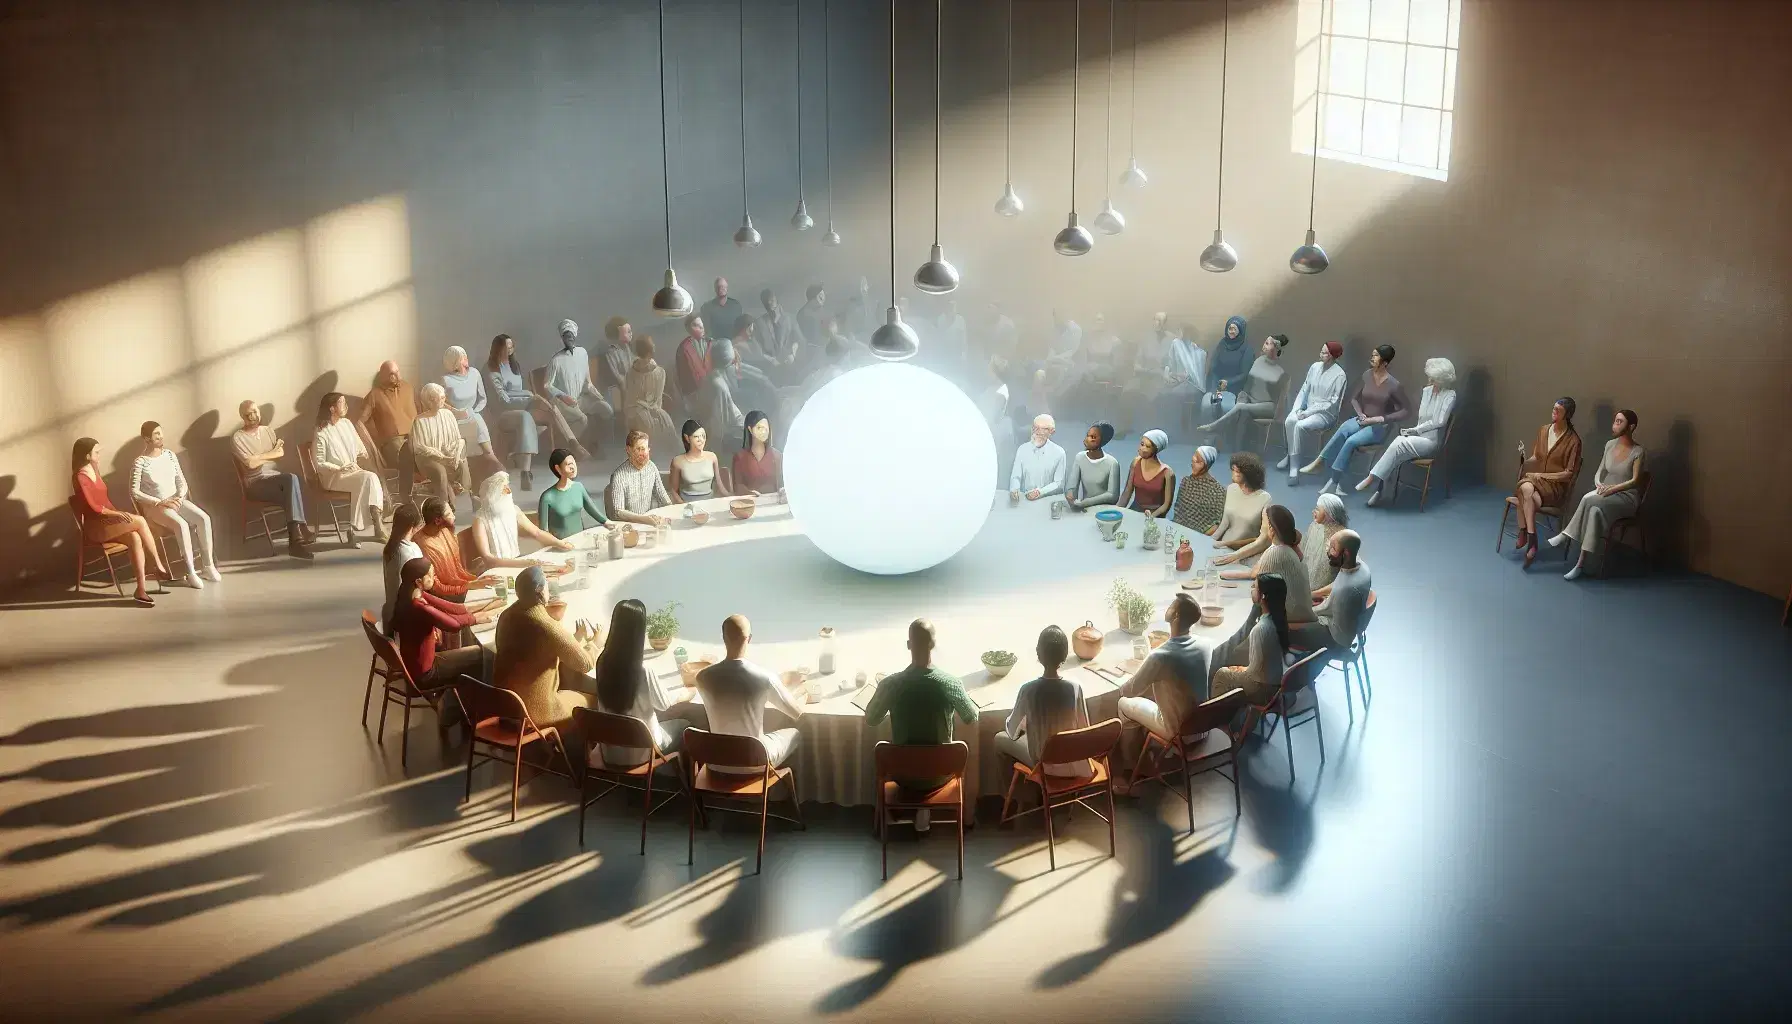 Grupo diverso de personas en animada discusión alrededor de una mesa redonda iluminada por una esfera central.